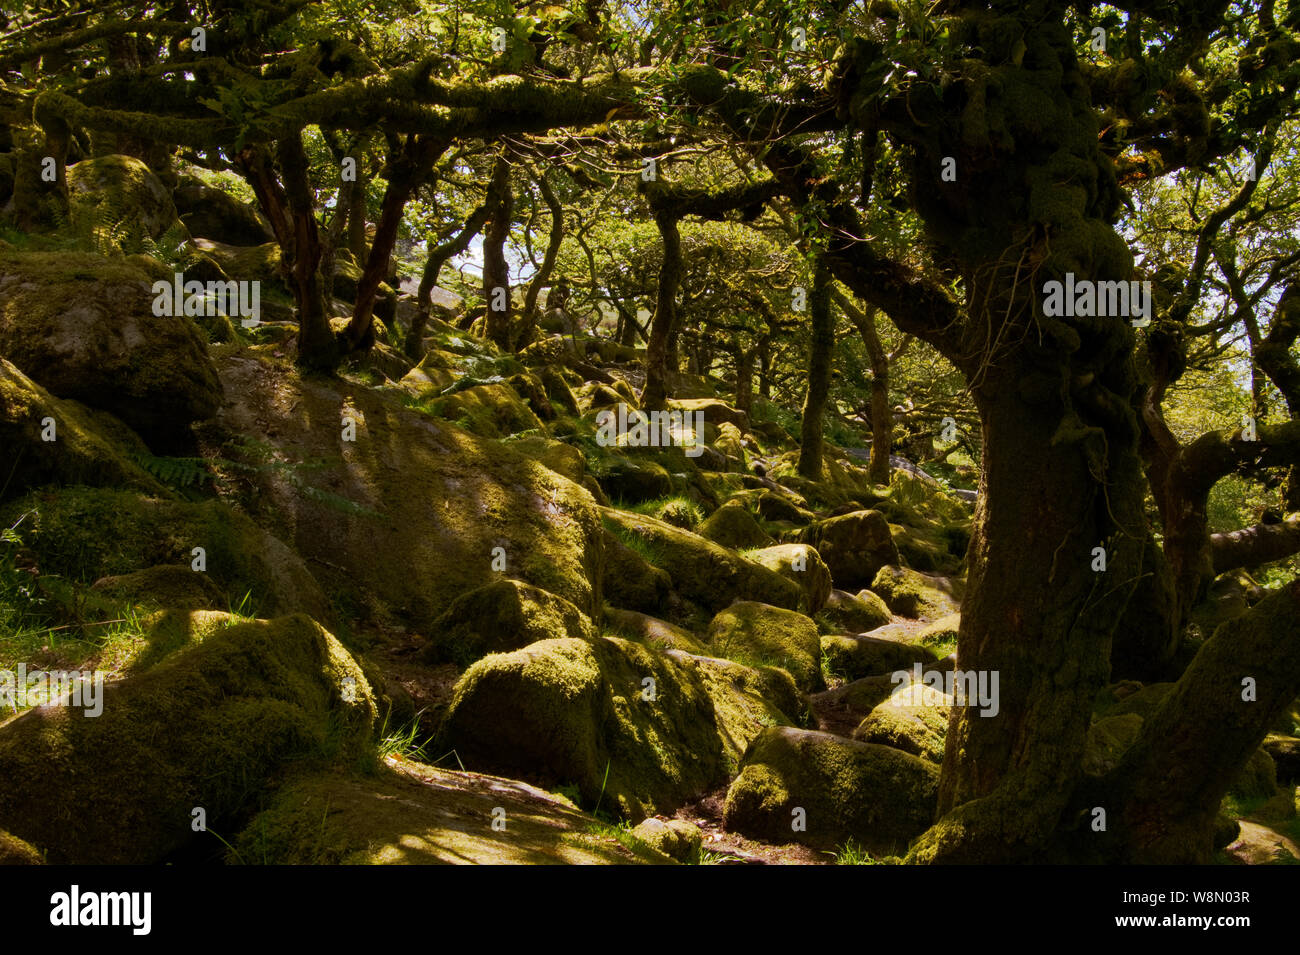 Des rochers recouverts de mousse aux rayons du soleil dans des bois de chêne ombragés, Wistman's Wood, parc national de Dartmoor, Royaume-Uni Banque D'Images